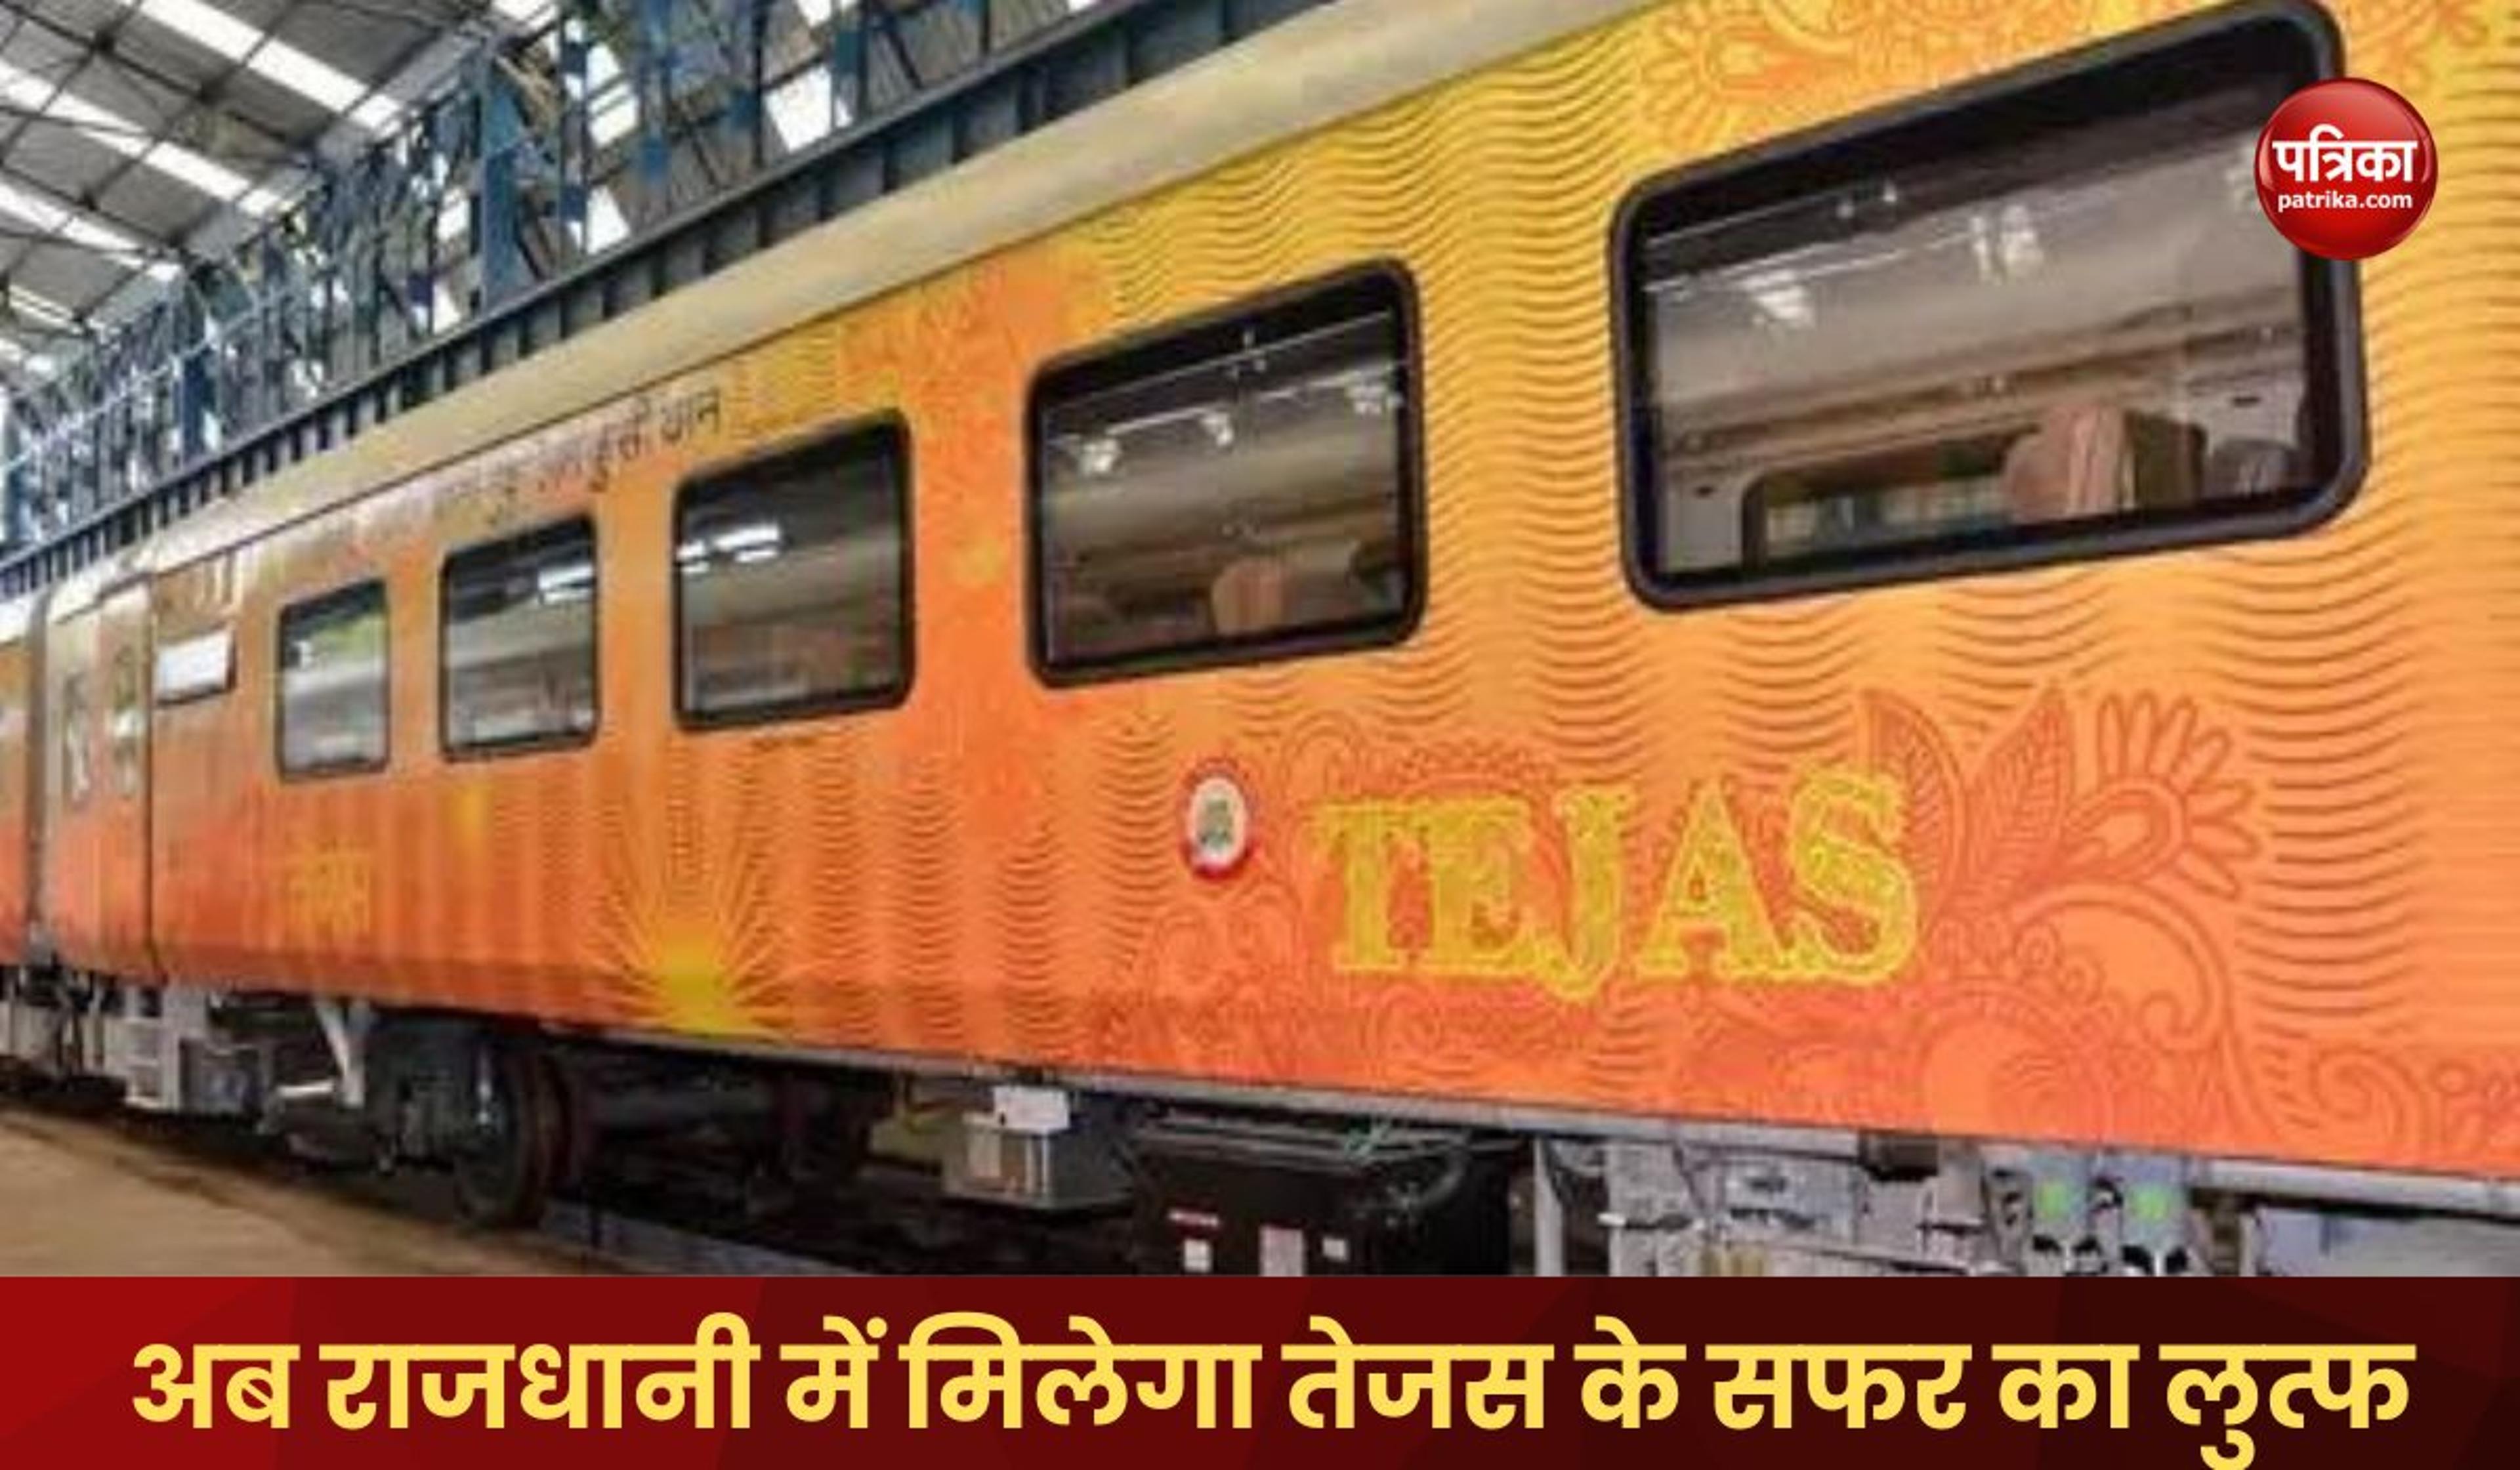 अच्छी खबर: अब राजधानी एक्सप्रेस के यात्रियों को मिलेगा तेजस में सफर का मजा, रेलवे ने शुरू की नई कवायद